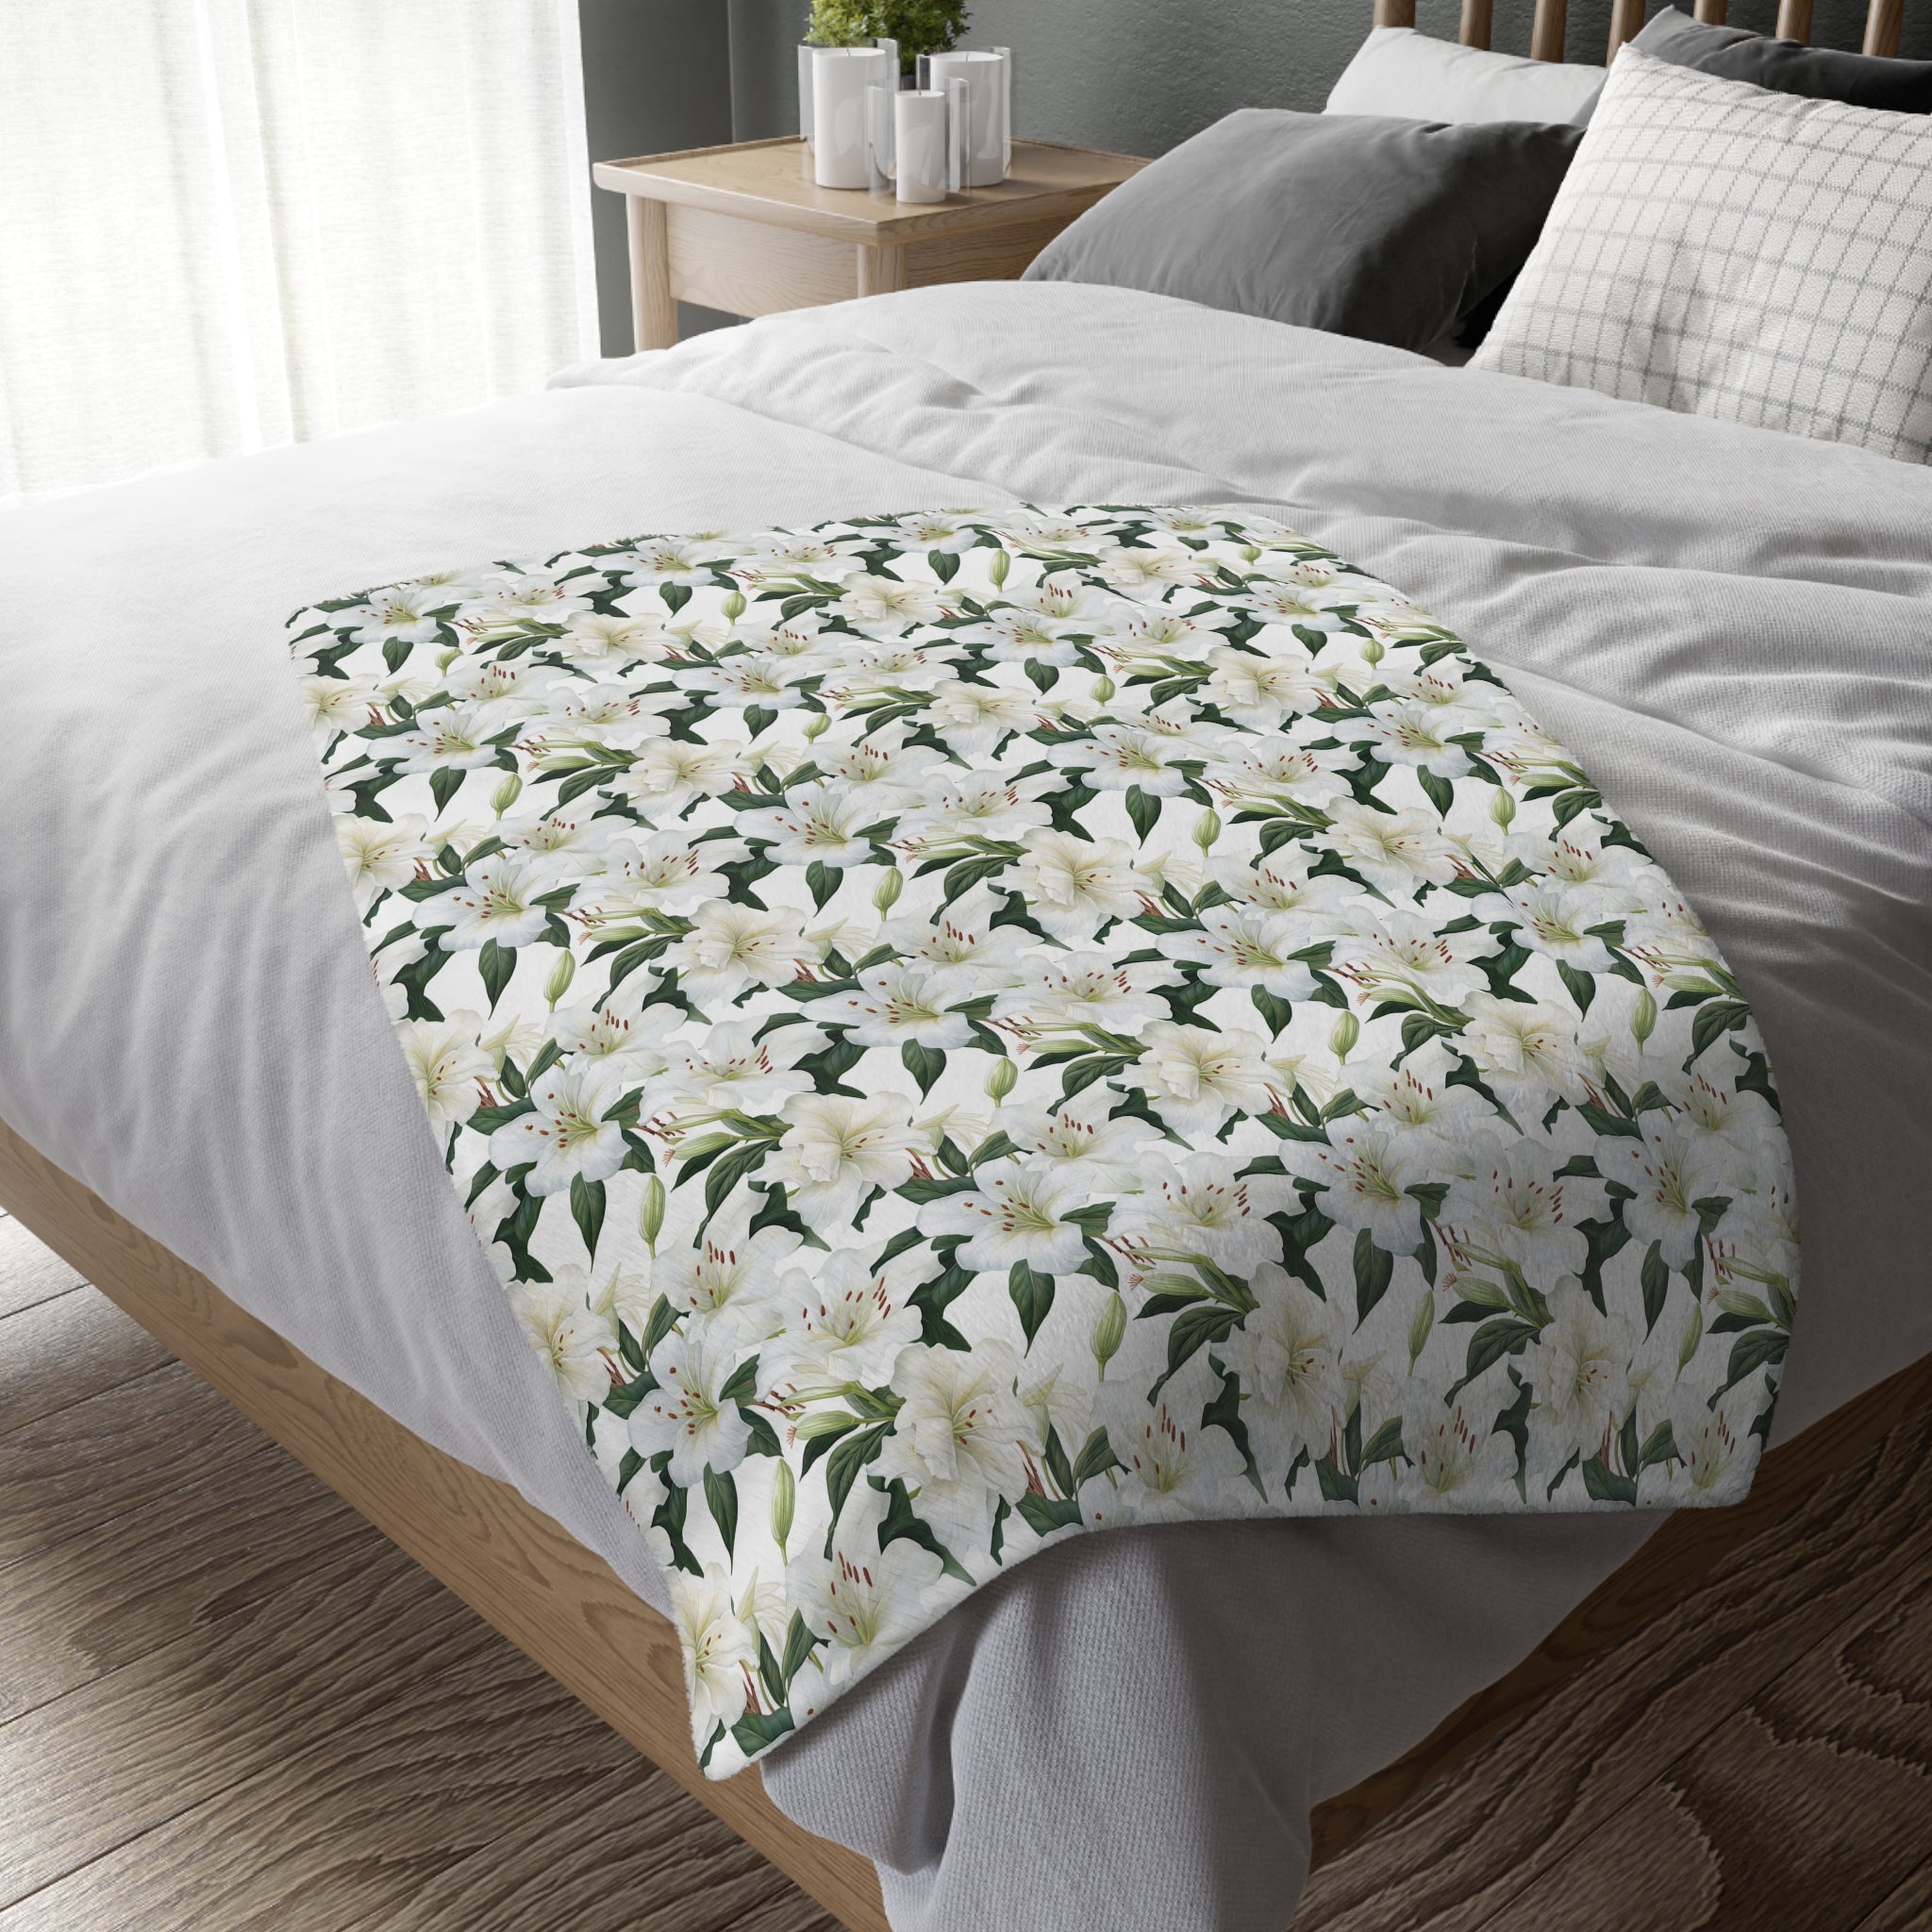 'Consider the Lilies' Velveteen Blanket